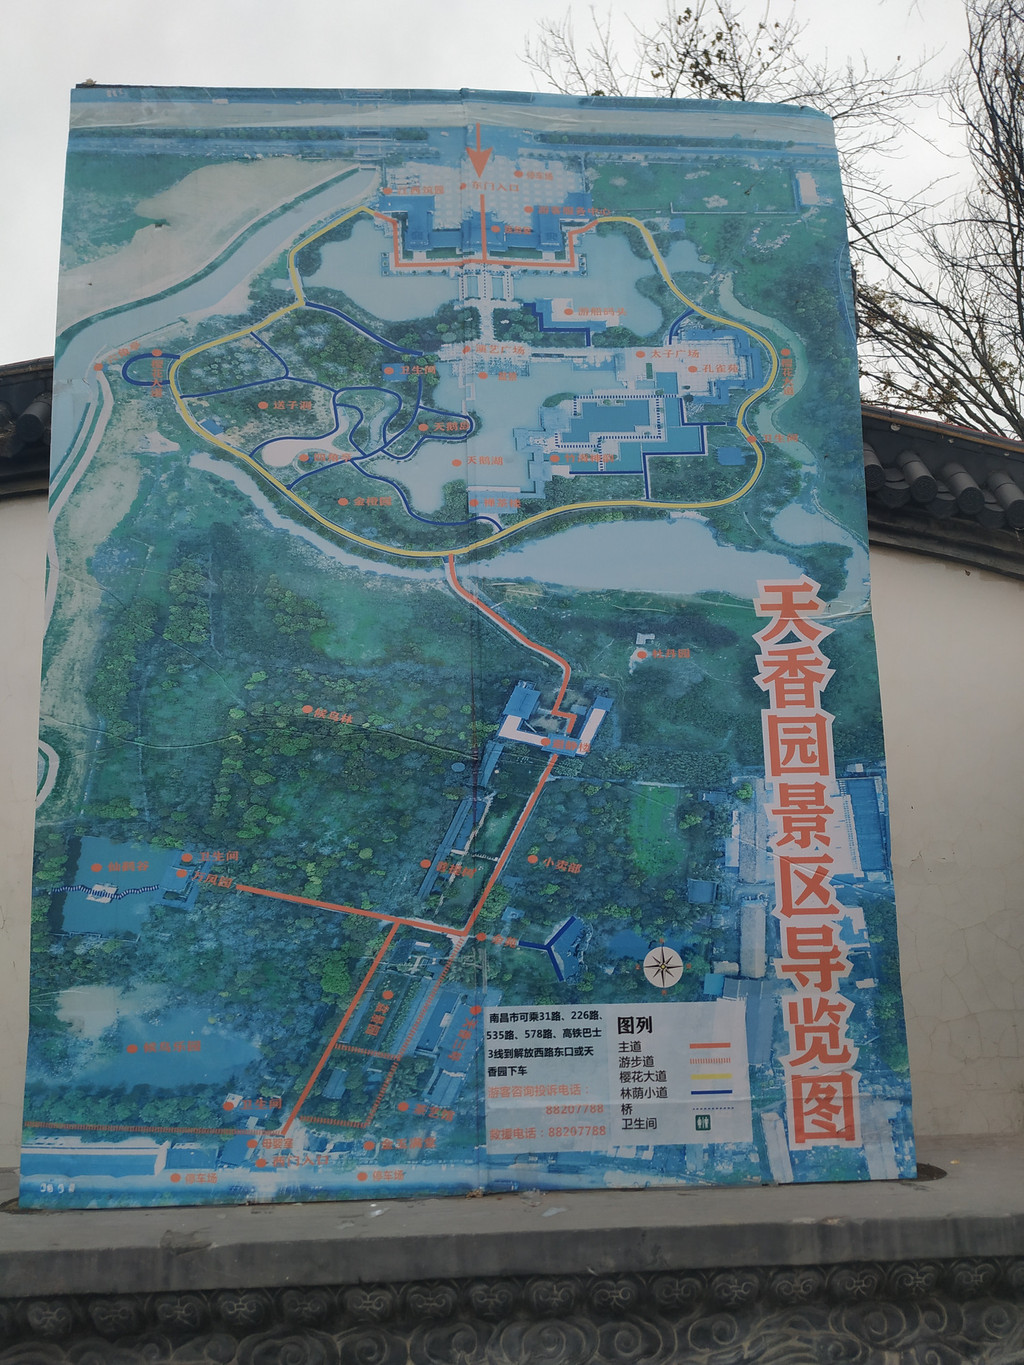 南昌天香园景区地图图片